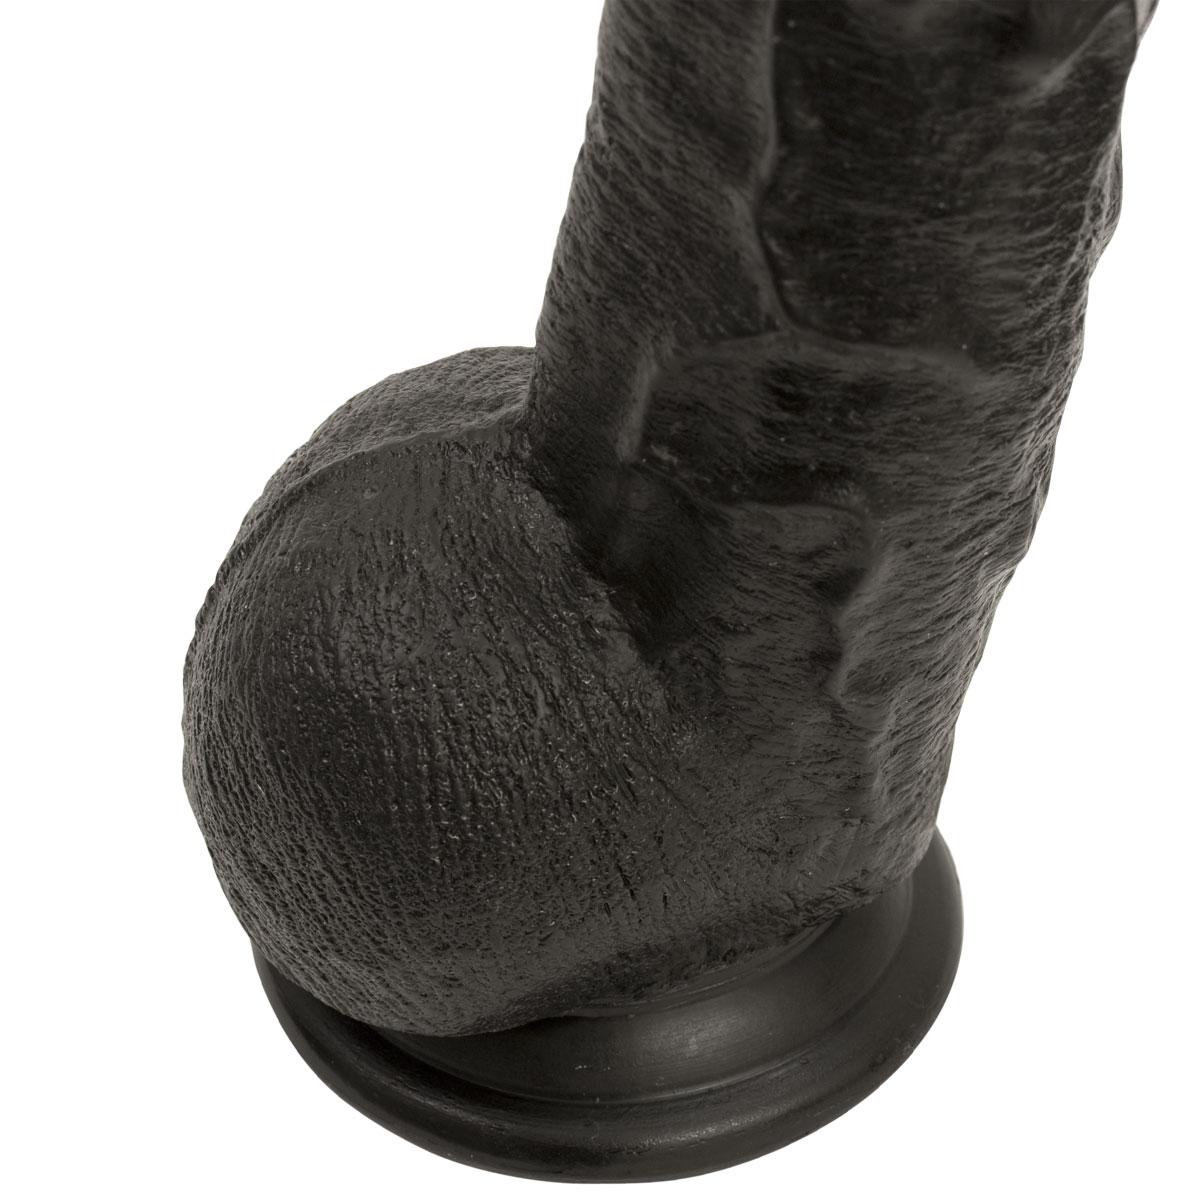 Черный длинный фаллоимитатор с мошонкой Dick Rambone Cock - 42,4 см.